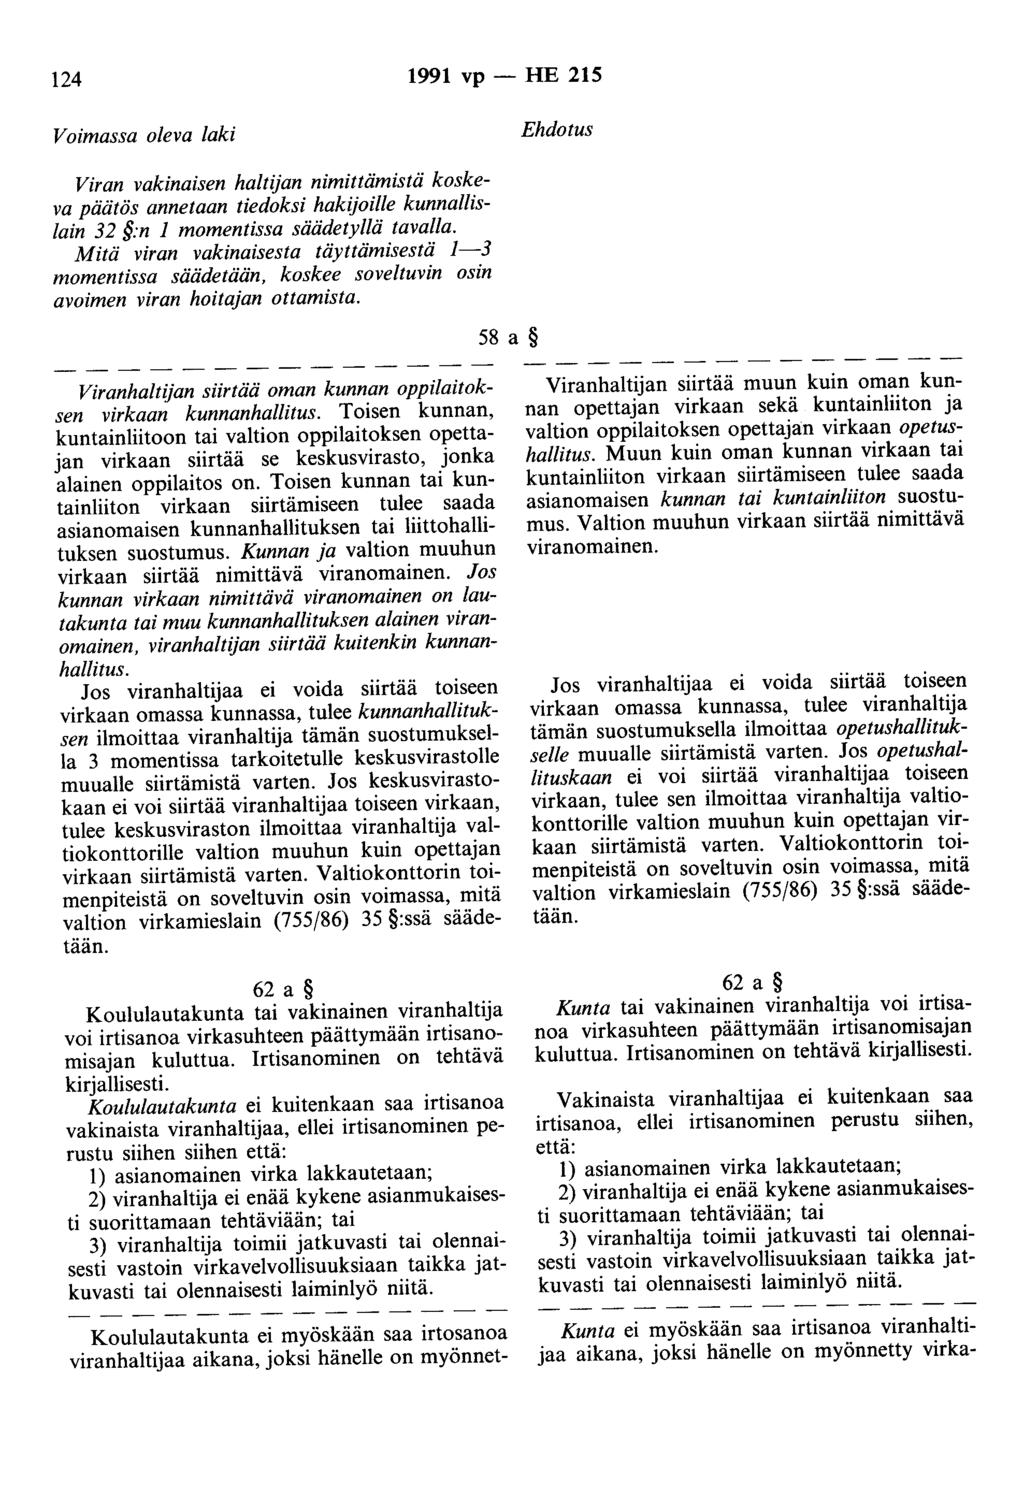 124 1991 vp - HE 215 Voimassa oleva laki Ehdotus Viran vakinaisen haltijan nimittämistä koskeva päätös annetaan tiedoksi hakijoille kunnallislain 32 :n 1 momentissa säädetyllä tavalla.